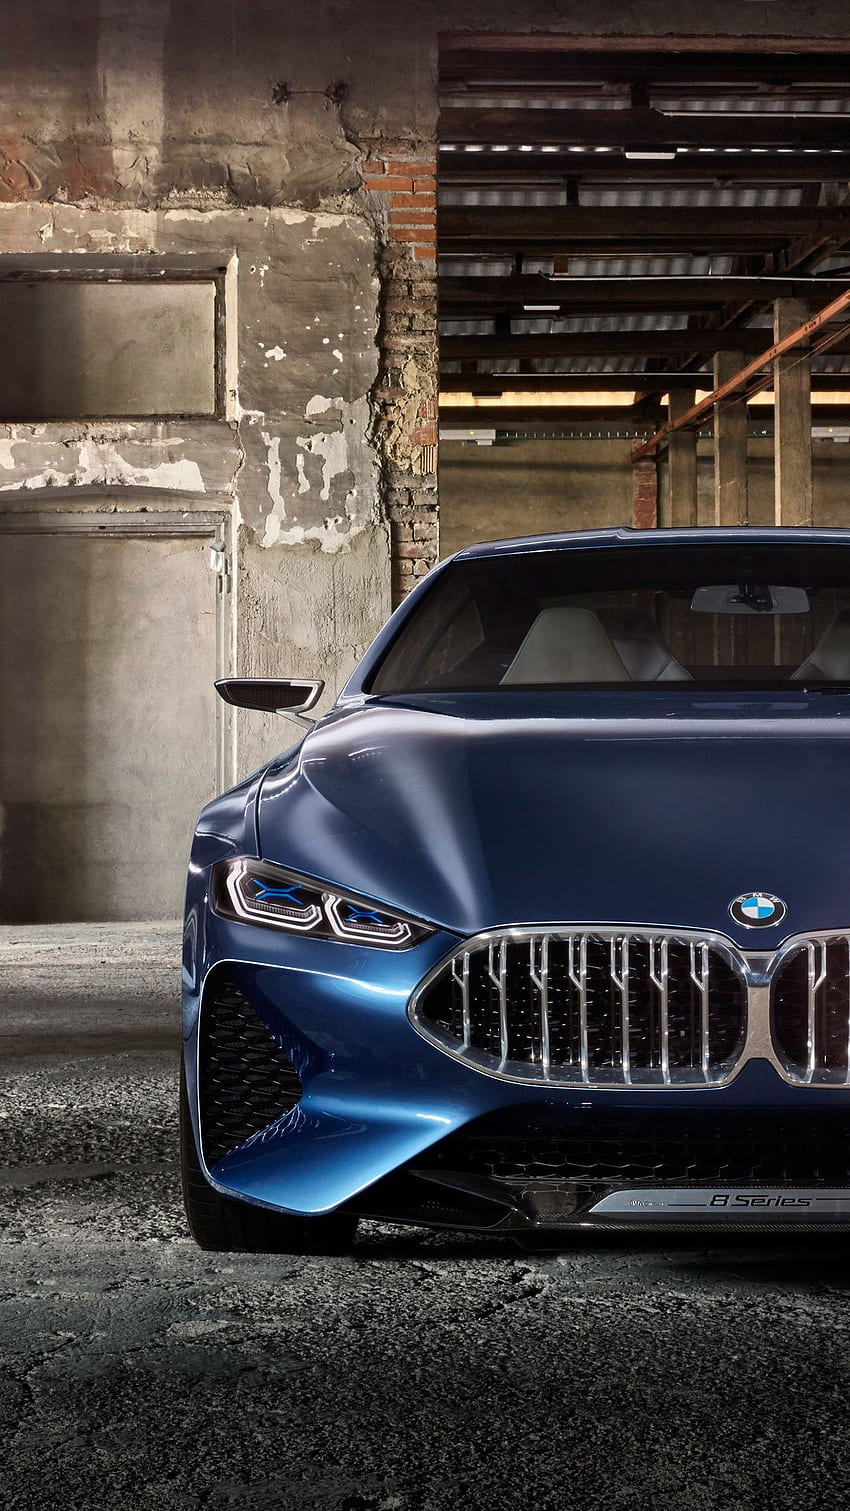 BMW - thương hiệu xe hơi danh tiếng từ những năm